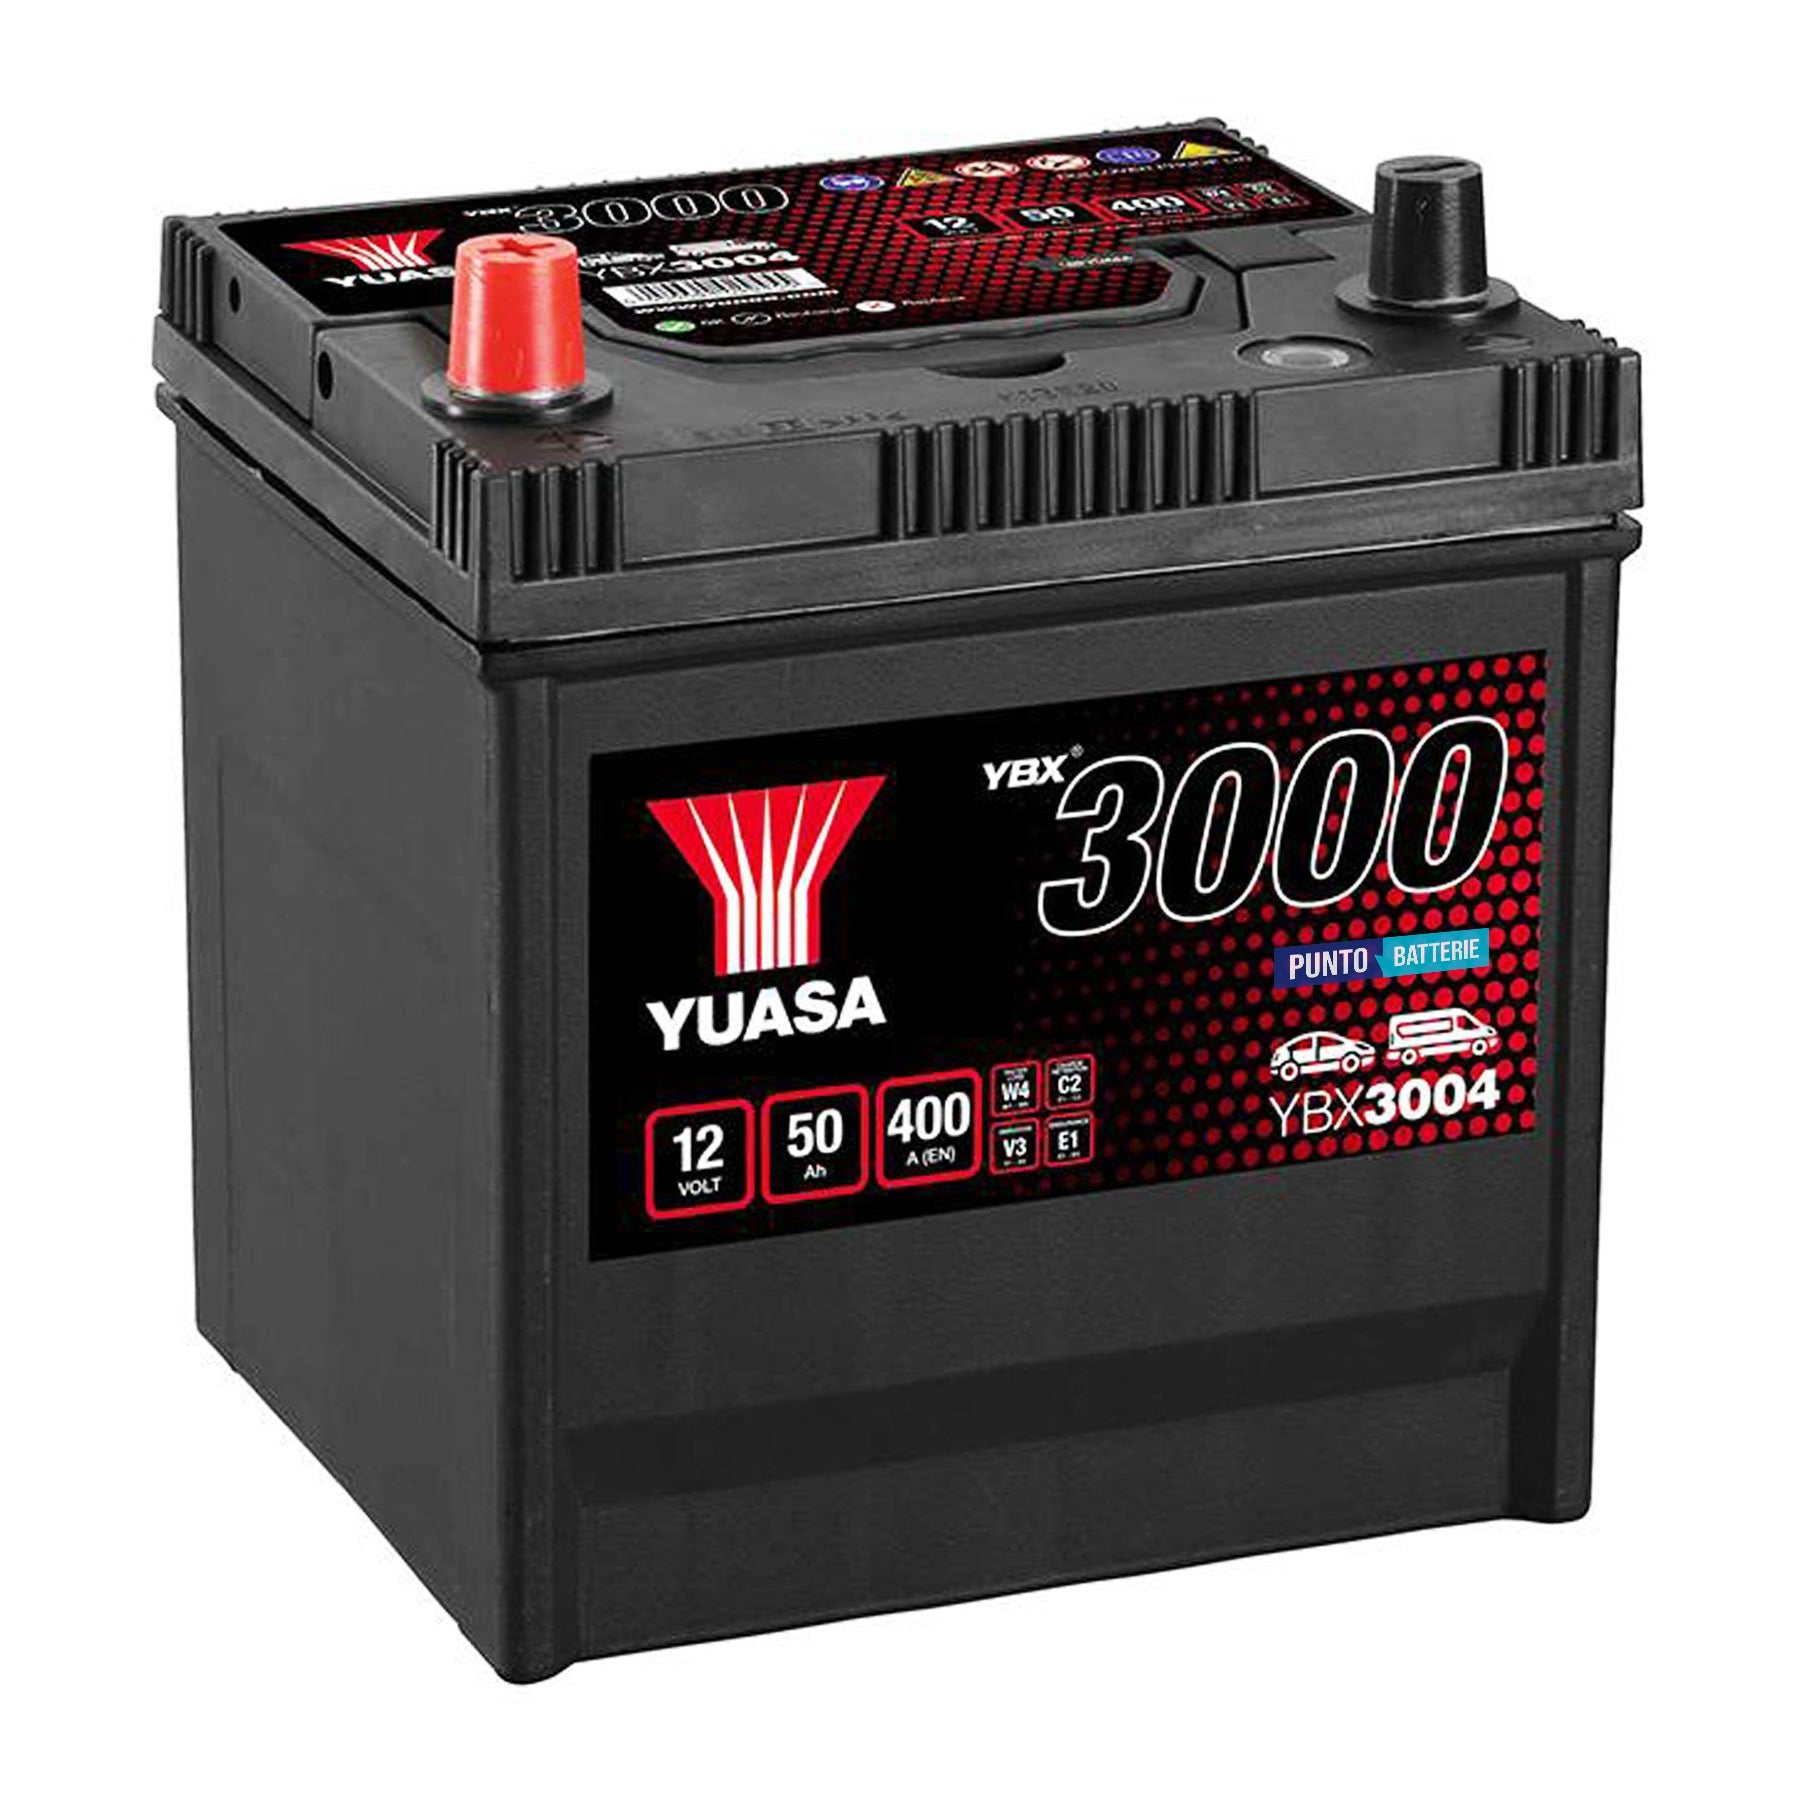 Batteria originale Yuasa YBX3000 YBX3004, dimensioni 202 x 173 x 225, polo positivo a sinistra, 12 volt, 50 amperora, 400 ampere. Batteria per auto e veicoli leggeri.